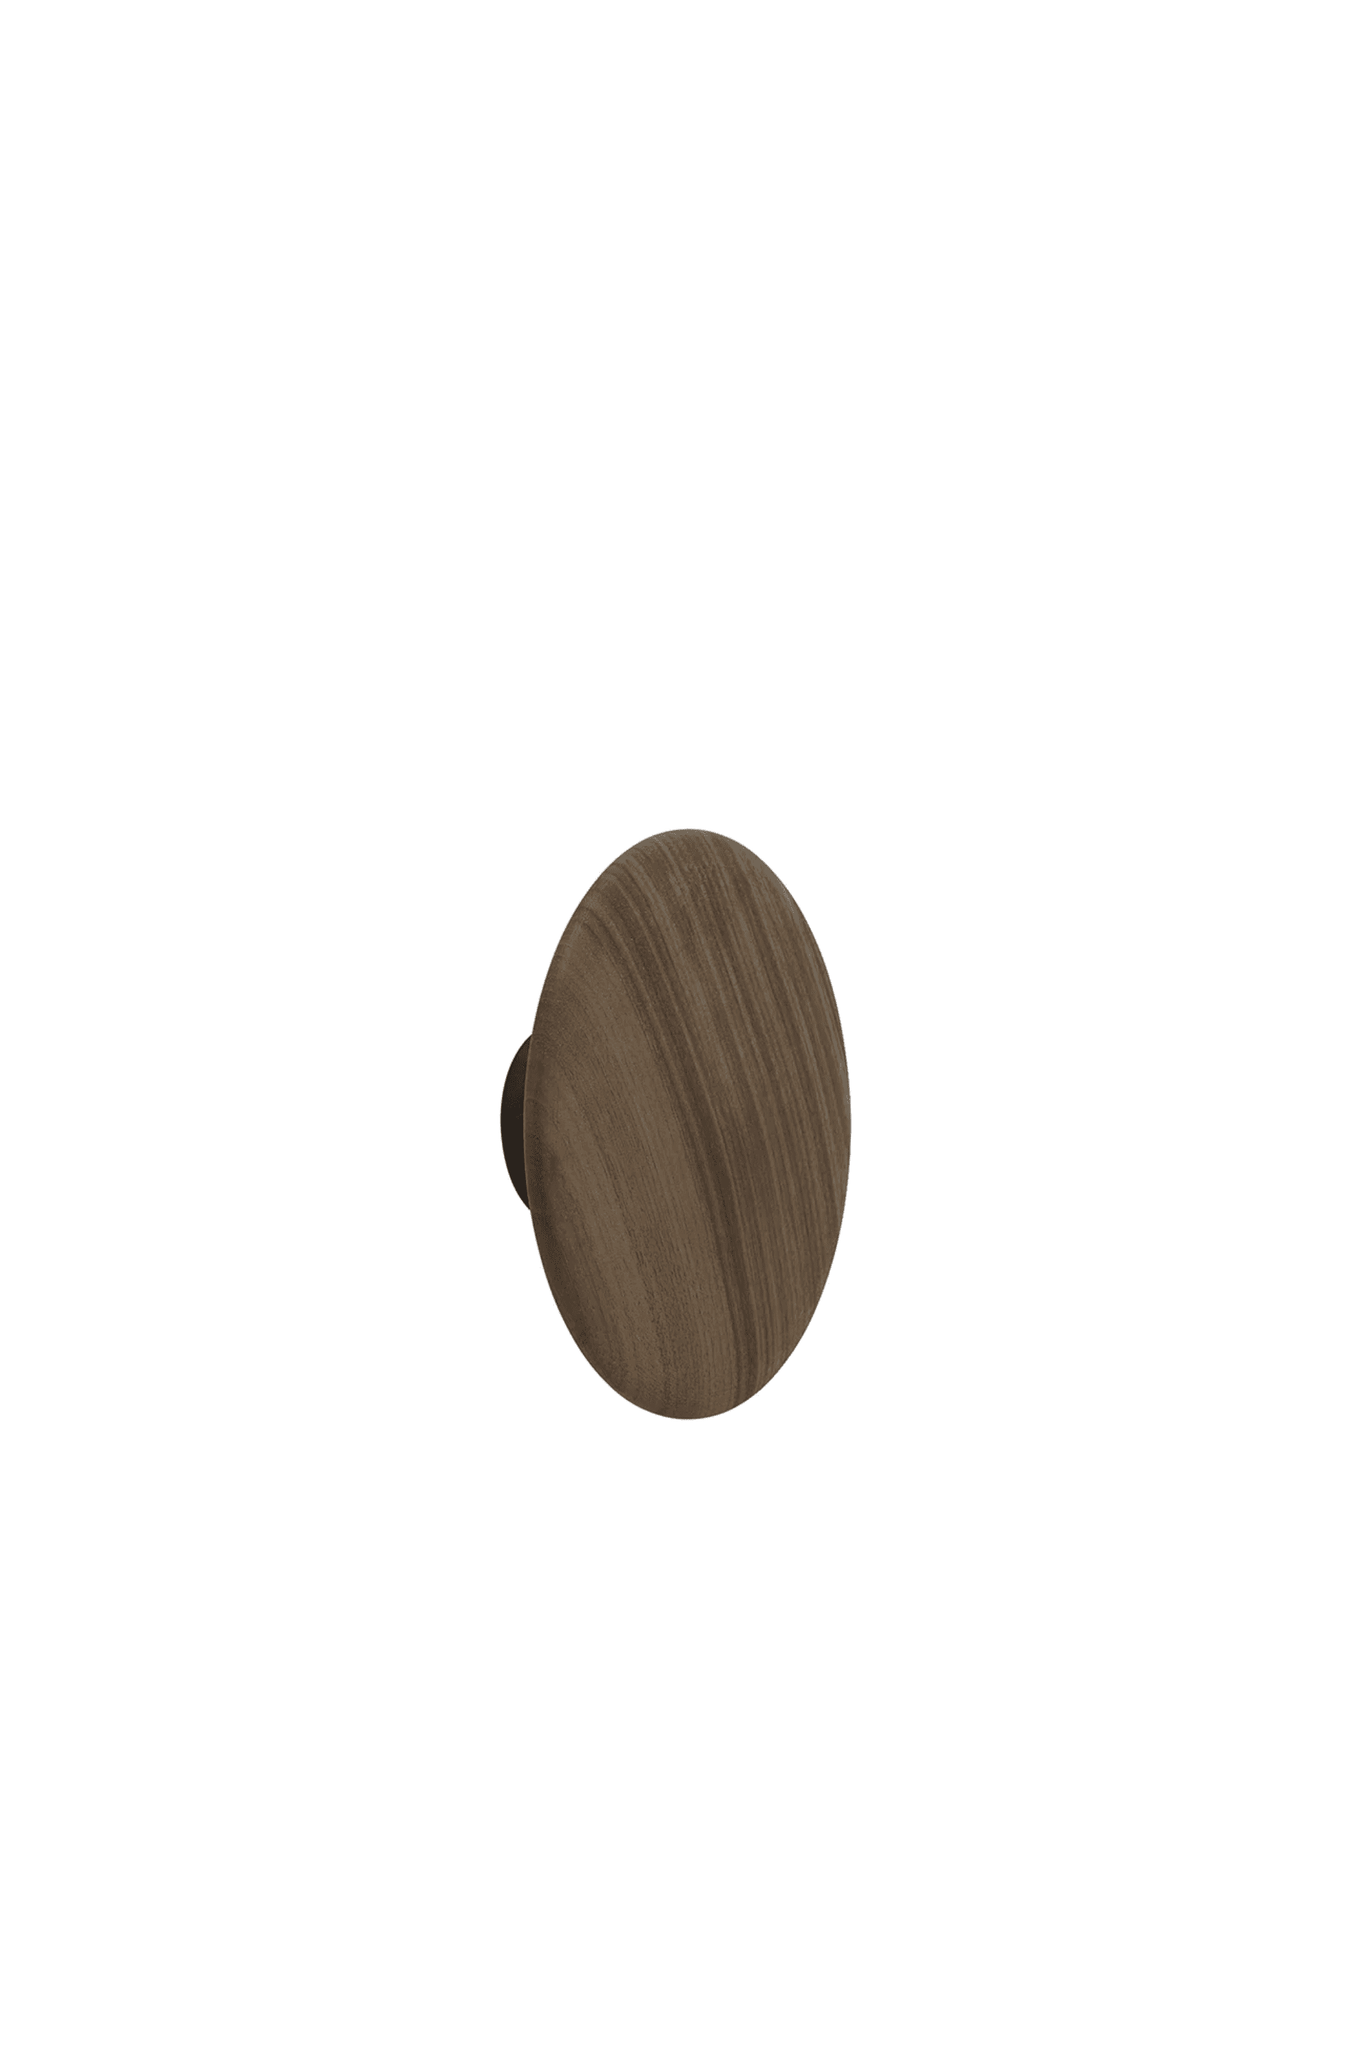 Dots Wood 17cm - Walnut